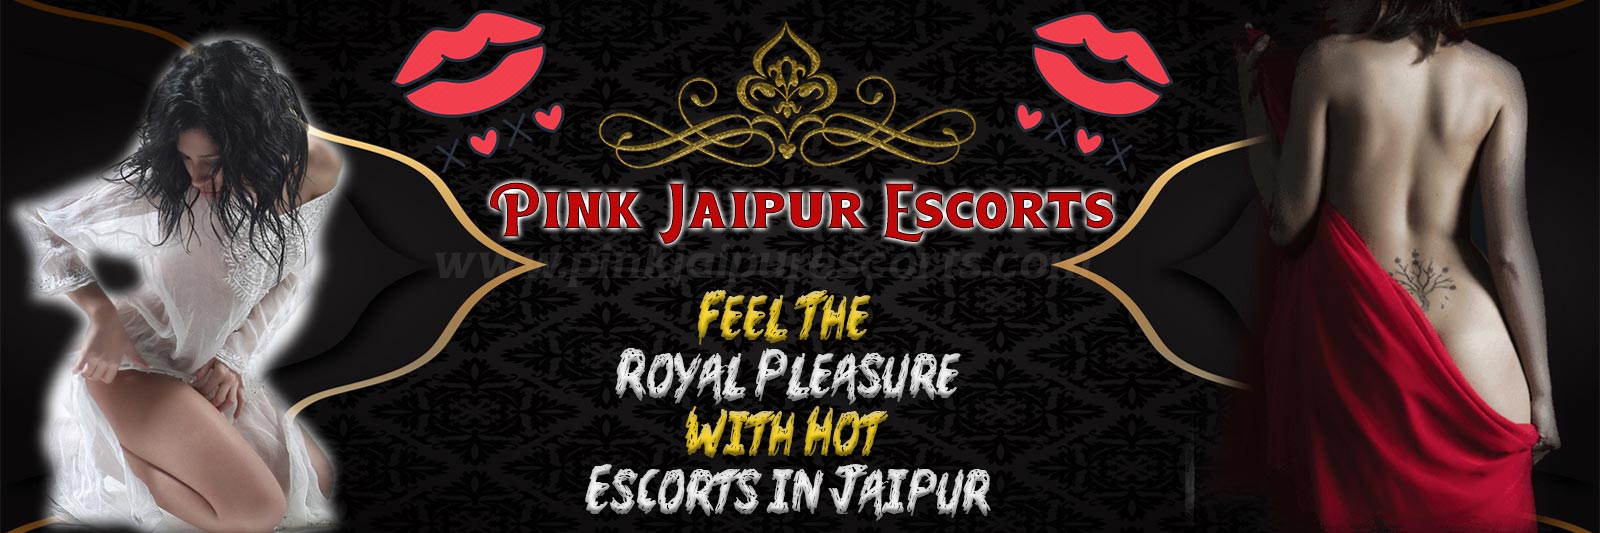 Escorts in Jaipur